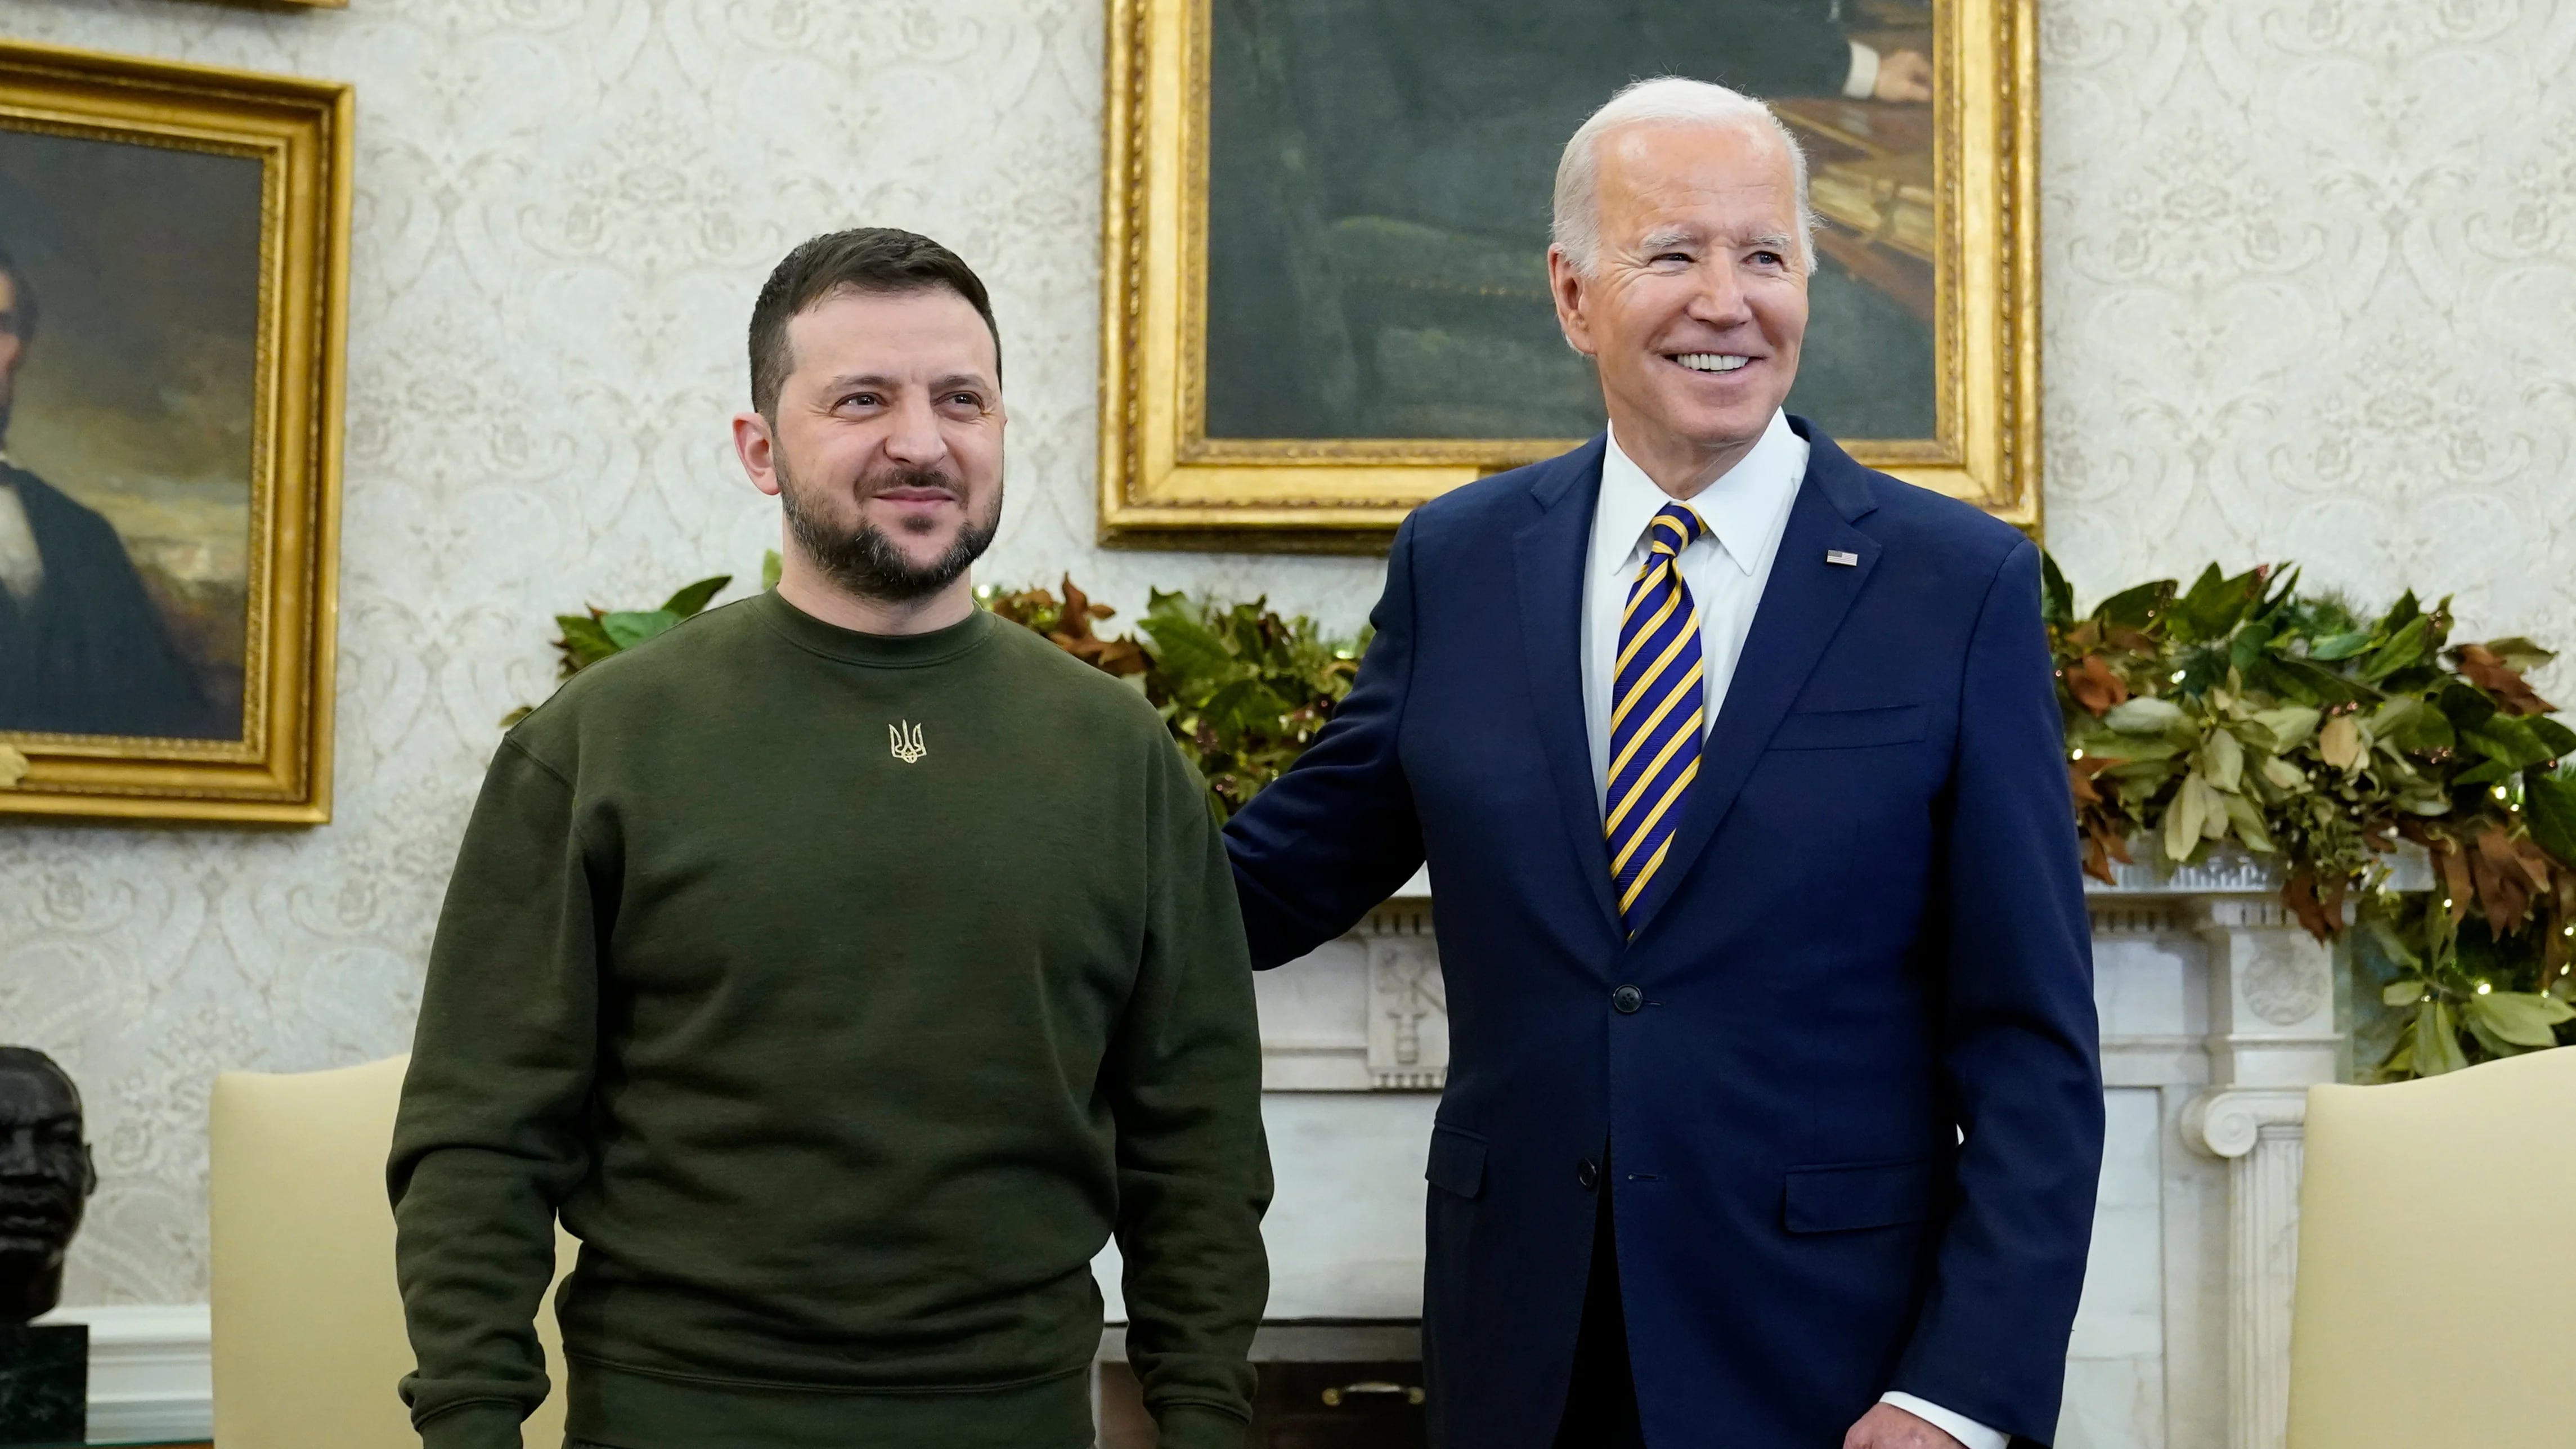 El presidente Joe Biden recibe al mandatario ucraniano Volodymyr Zelenskyy en la Oficina Oval de la Casa Blanca, el miércoles 21 de diciembre de 2022, en Washington. (AP Foto/Patrick Semansky)